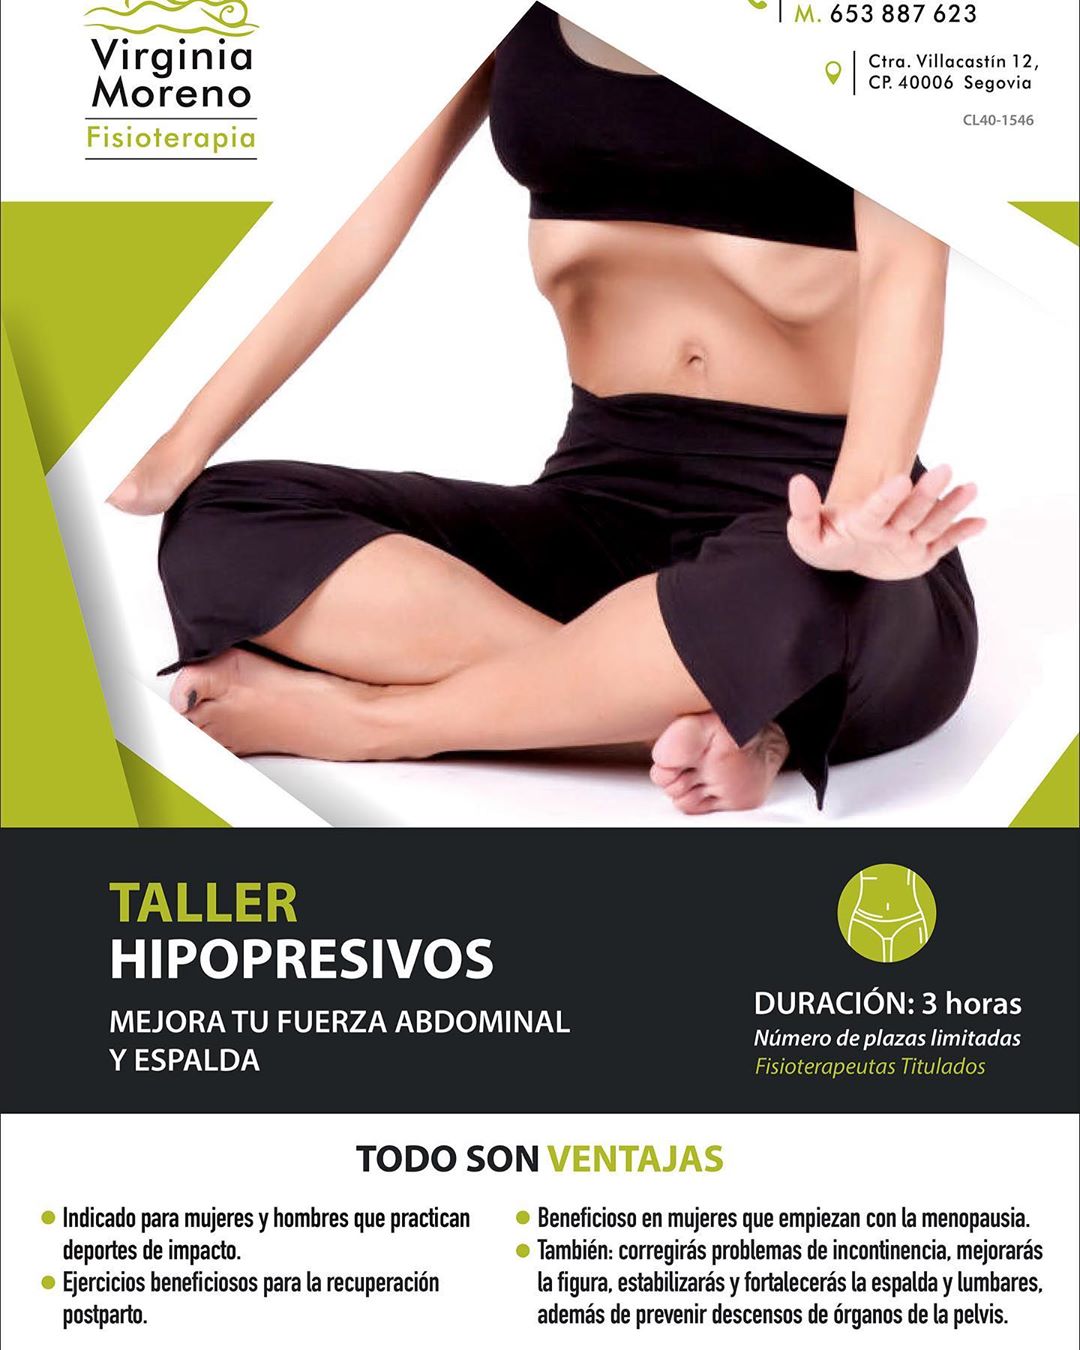 Taller Hipopresivos de Virginia Moreno Fisioterapia